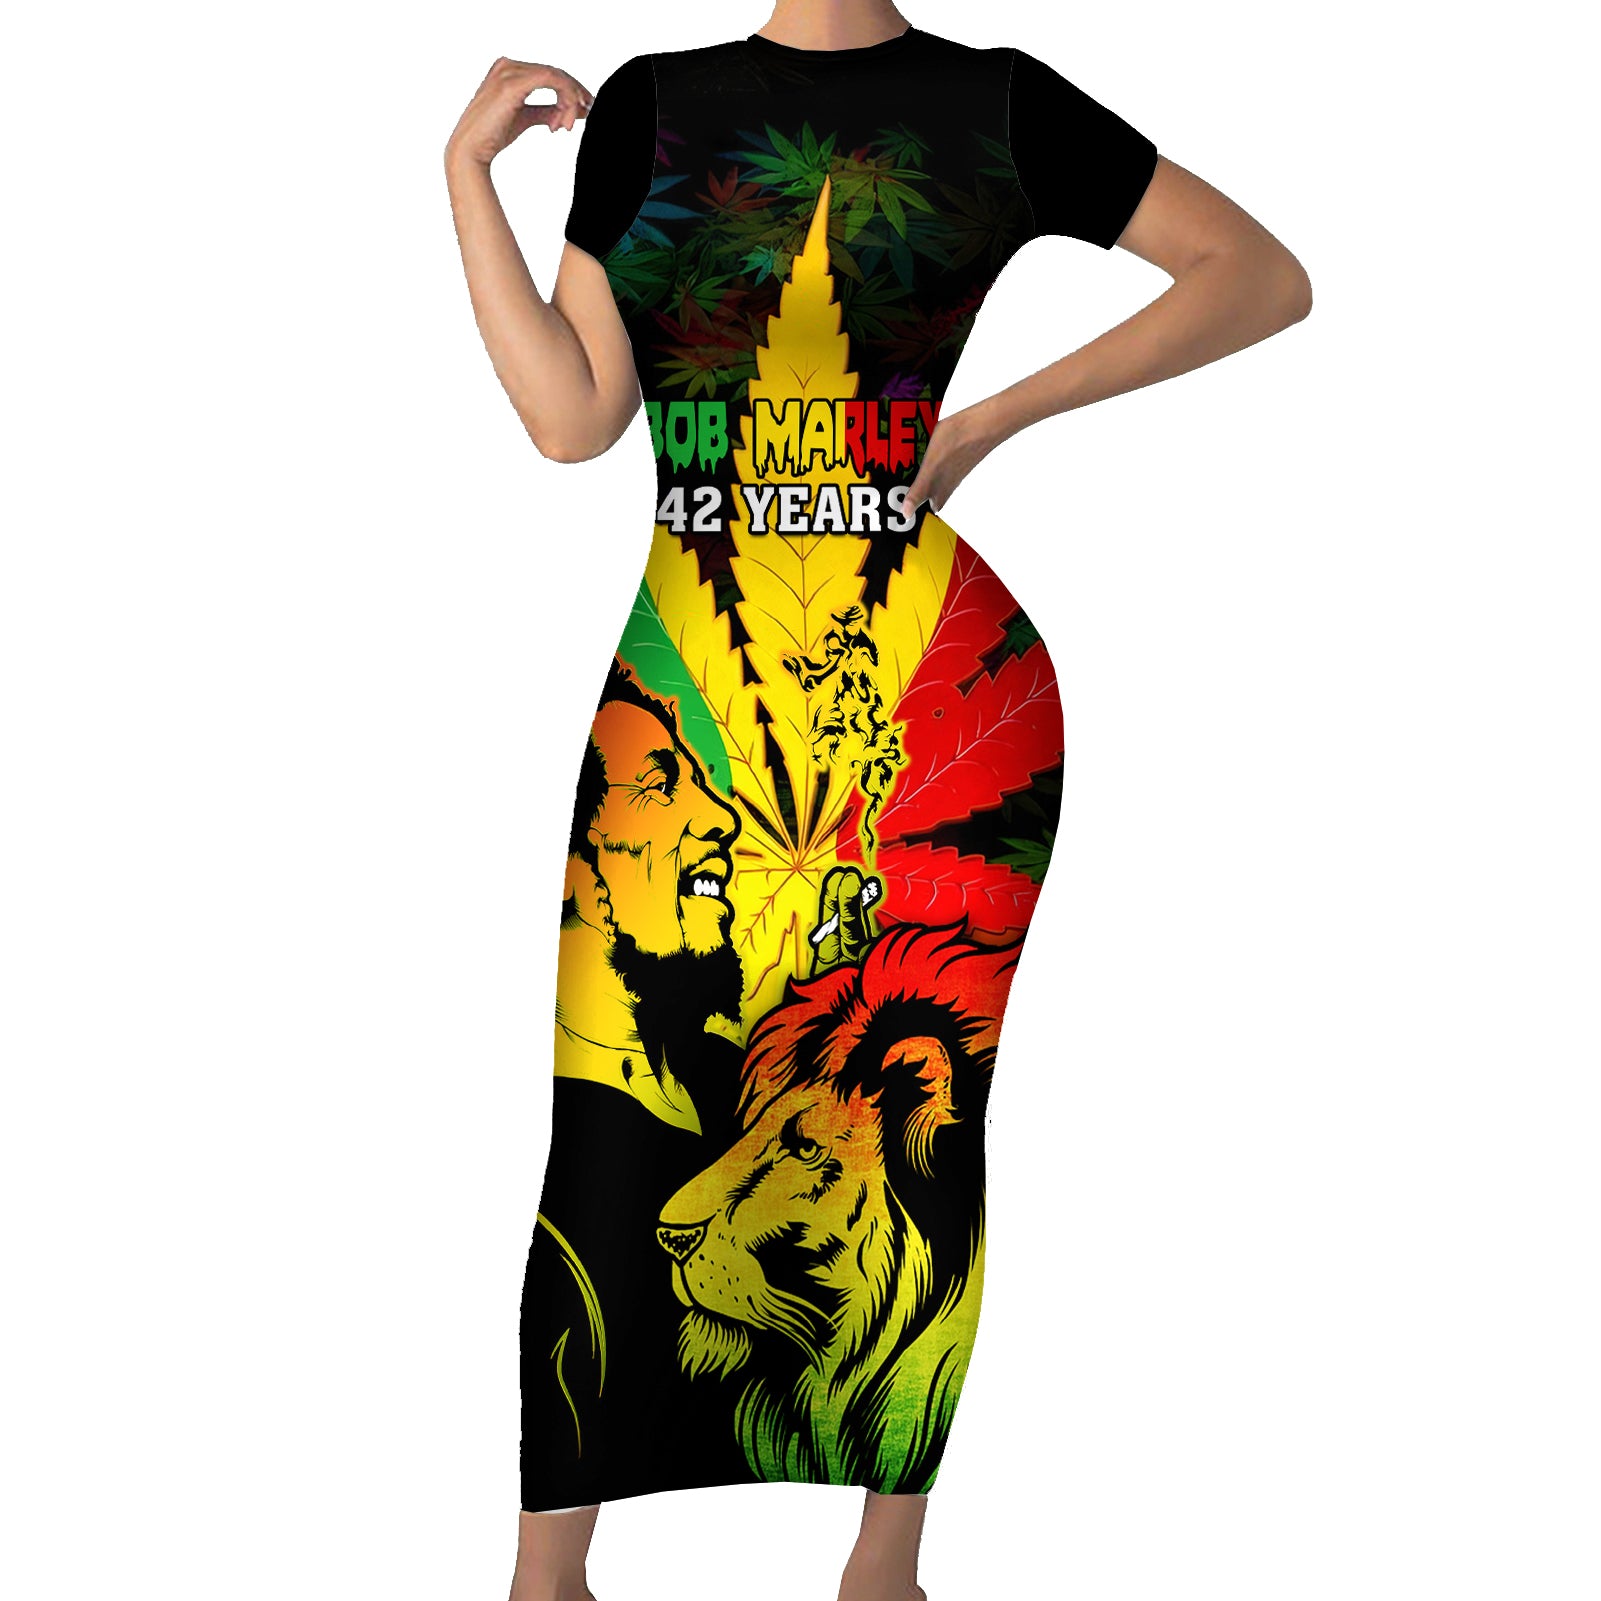 jamaica-bob-marley-short-sleeve-bodycon-dress-lion-with-cannabis-leaf-pattern